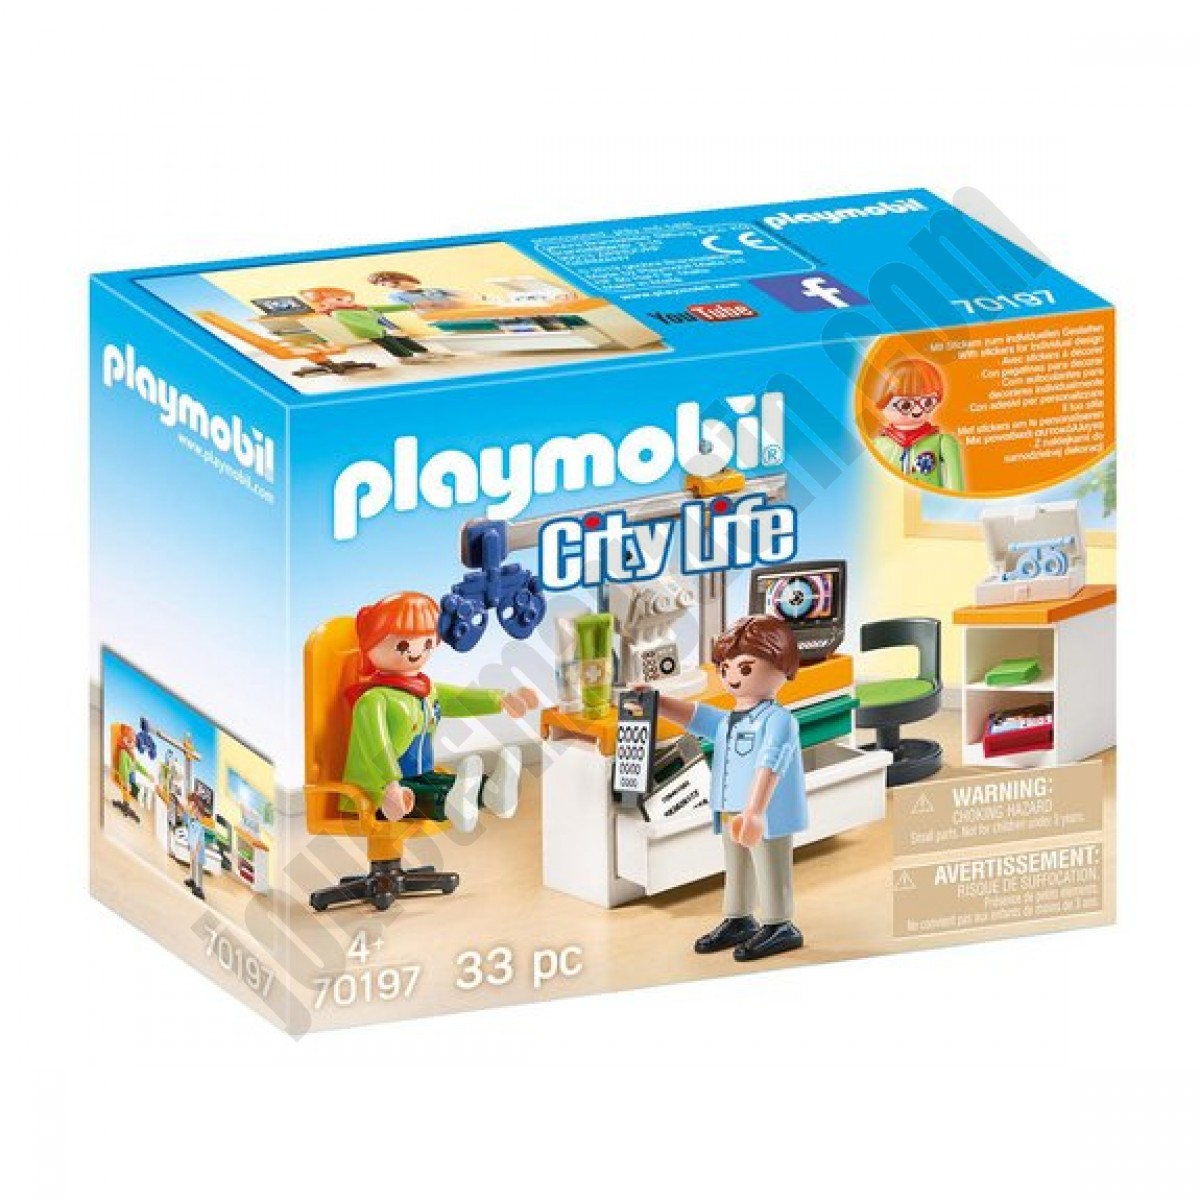 Cabinet d'ophtalmologie Playmobil City Life 70197 ◆◆◆ Nouveau - Cabinet d'ophtalmologie Playmobil City Life 70197 ◆◆◆ Nouveau